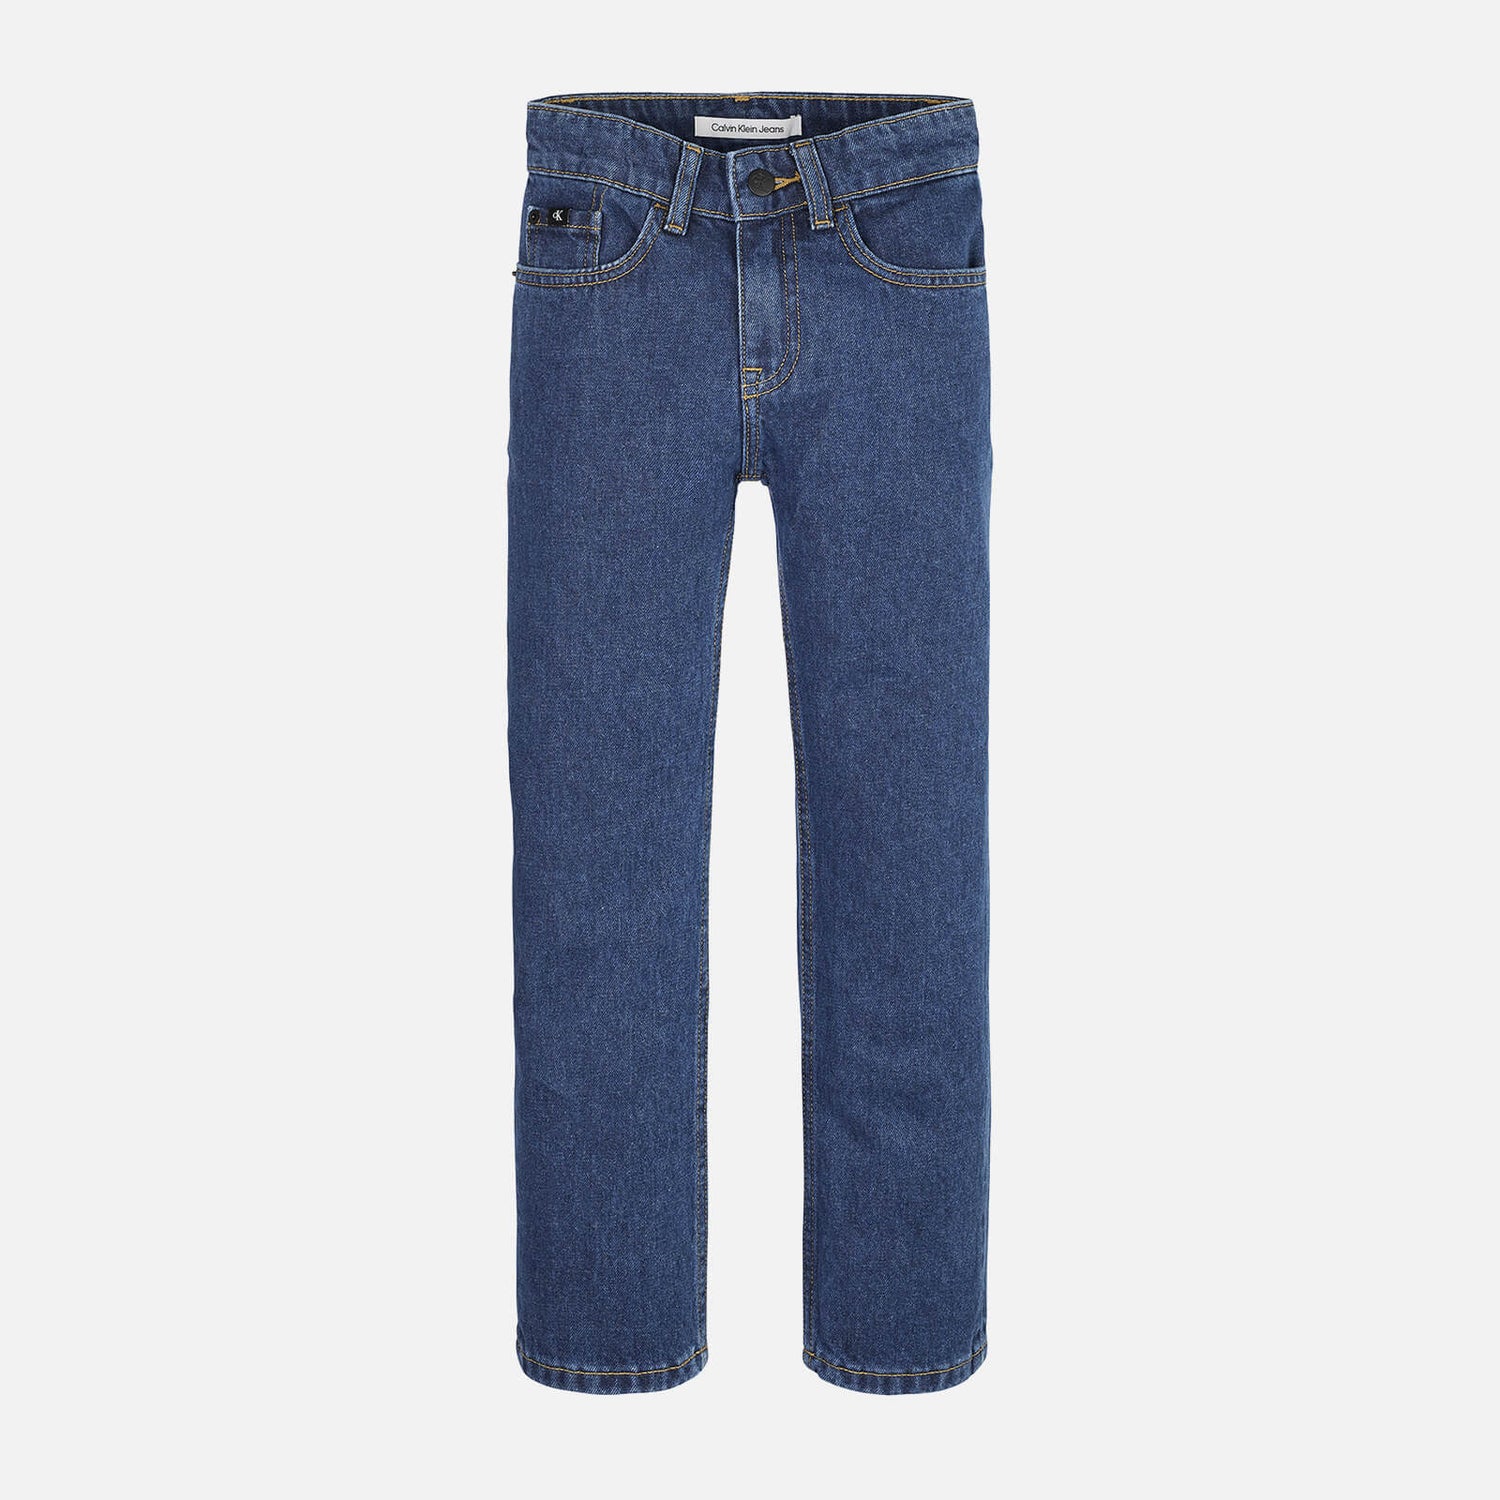 Calvin Klein Boys' Straight Denim Jeans - 10 Years